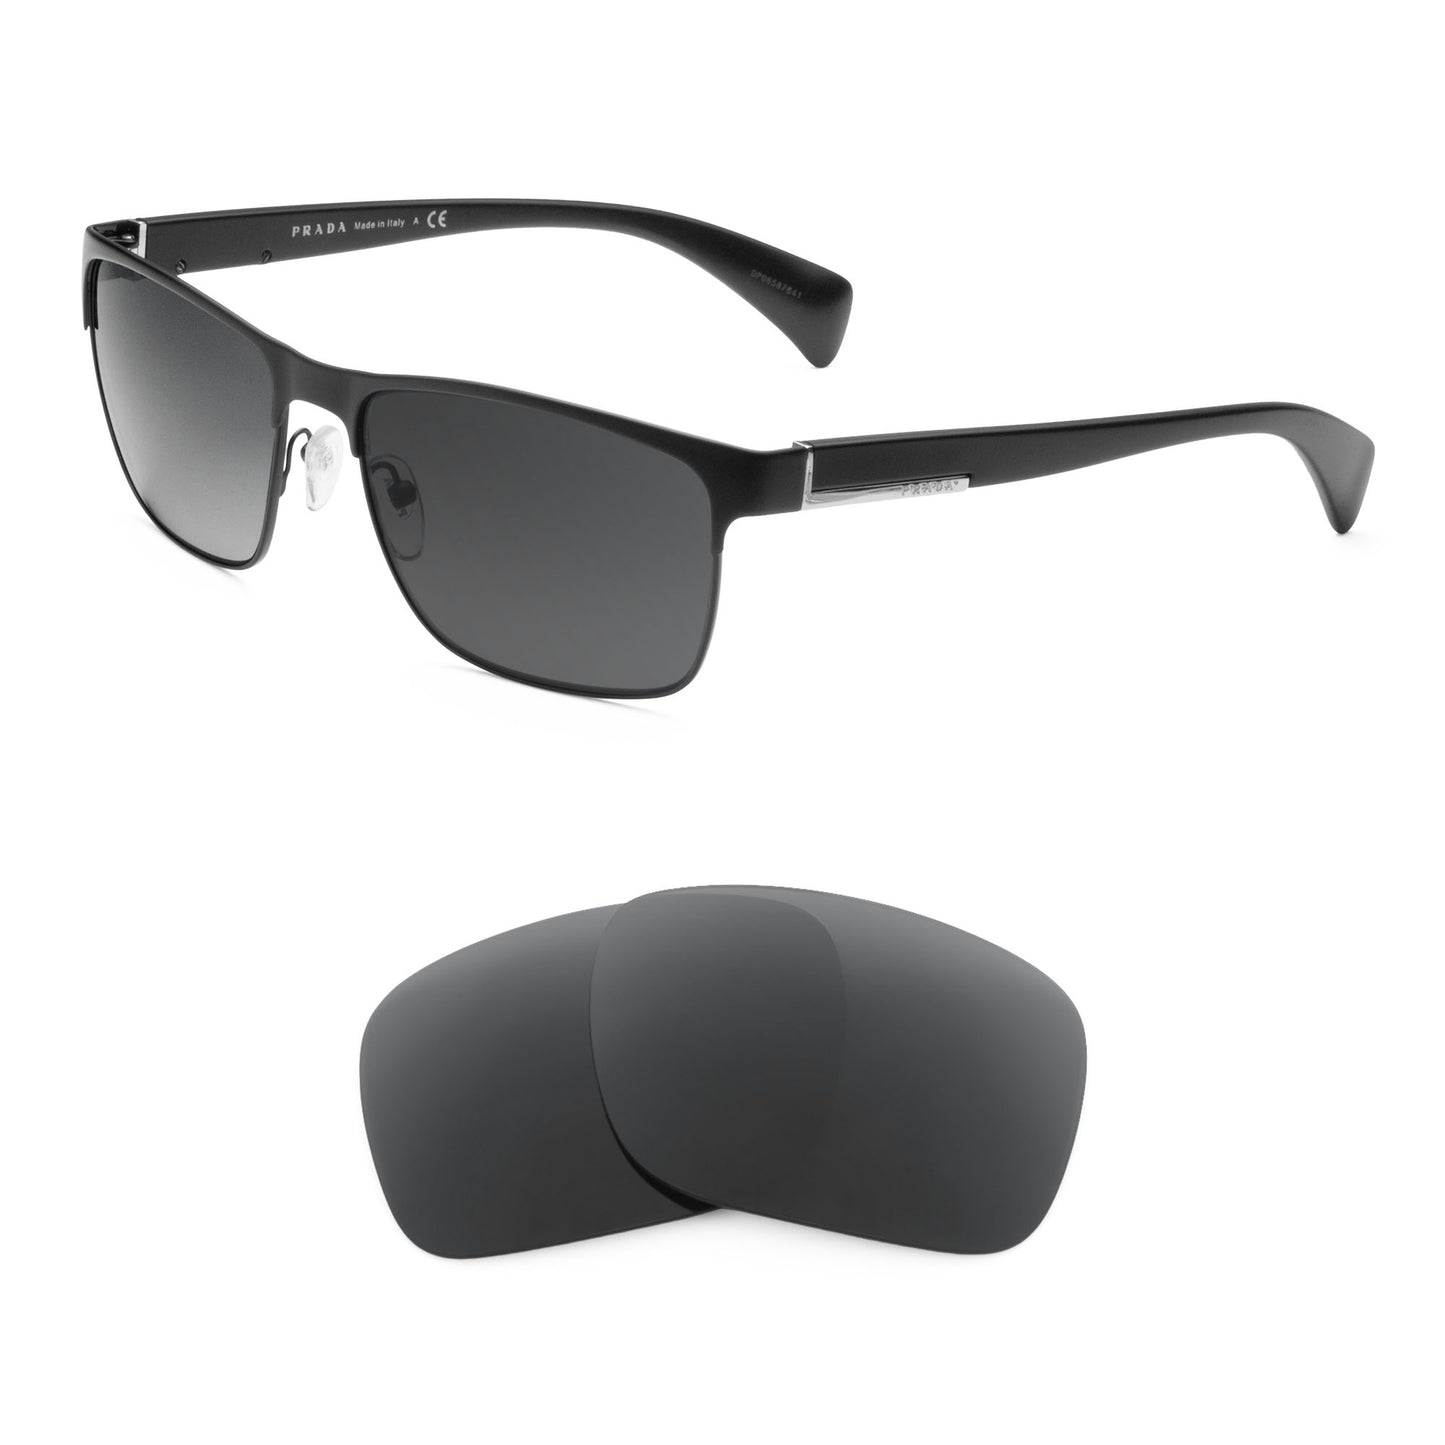 Prada SPR 510 sunglasses with replacement lenses